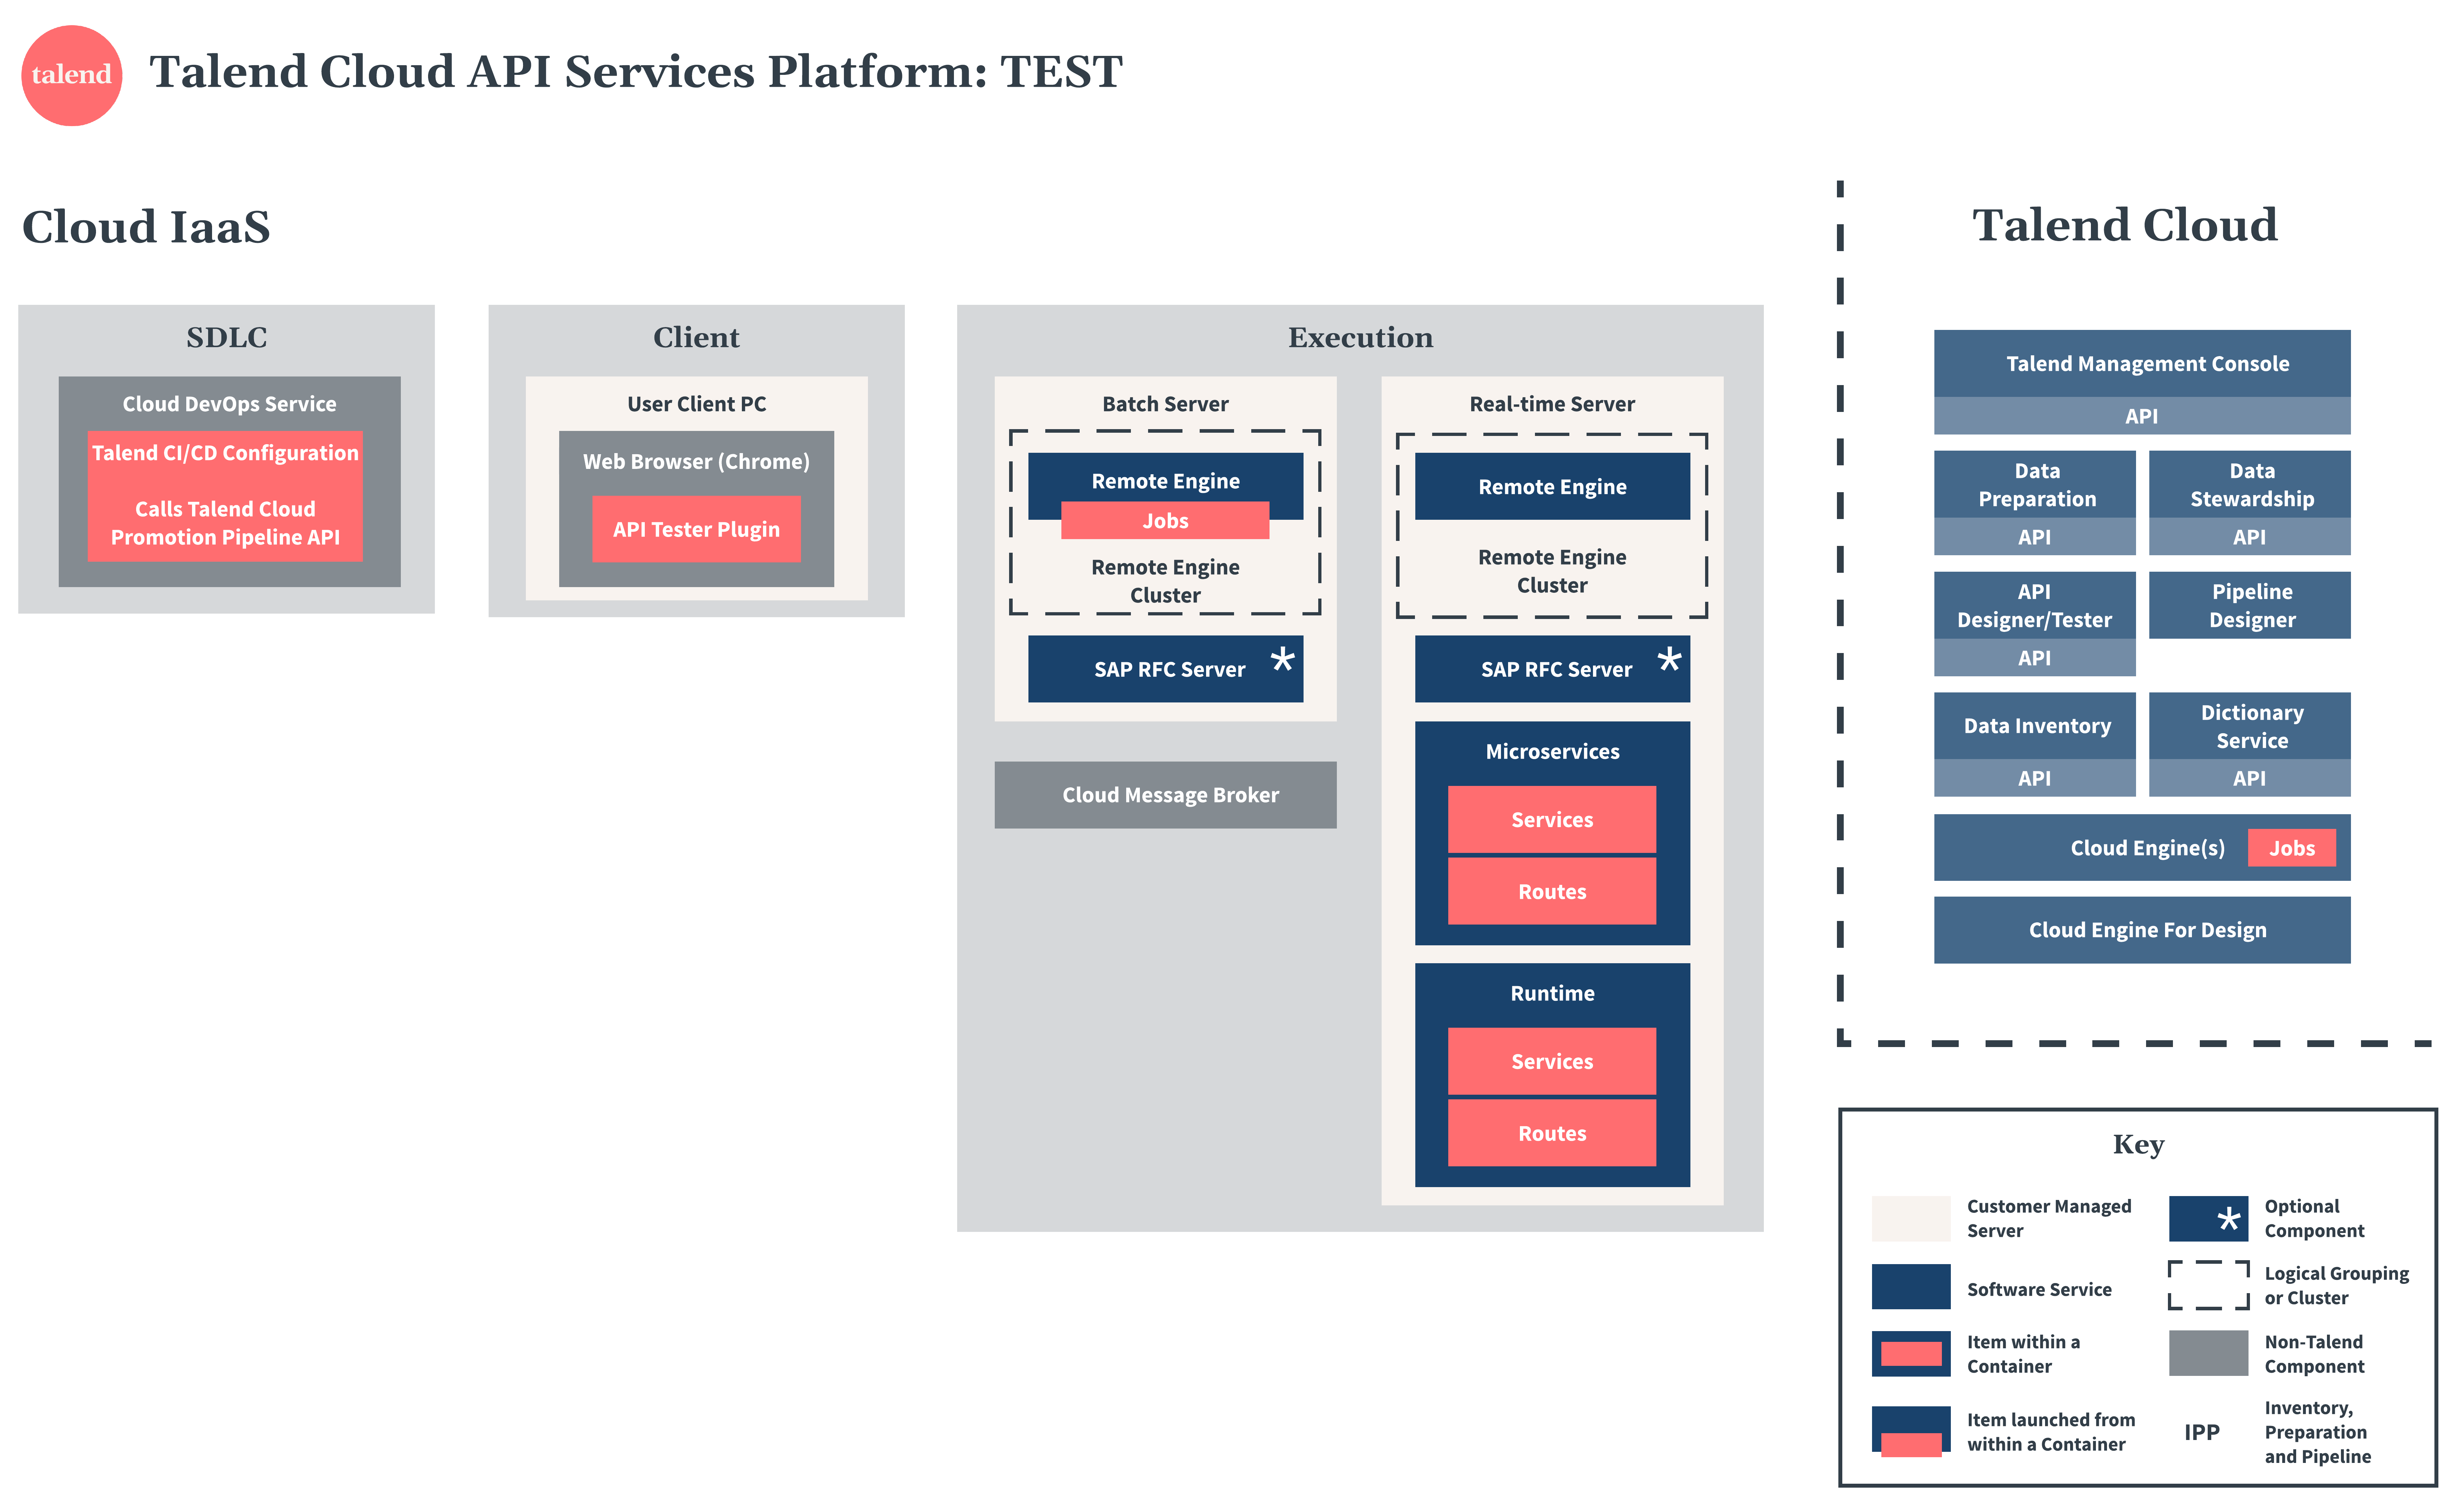 Talend Cloud API Services Platform test diagram.